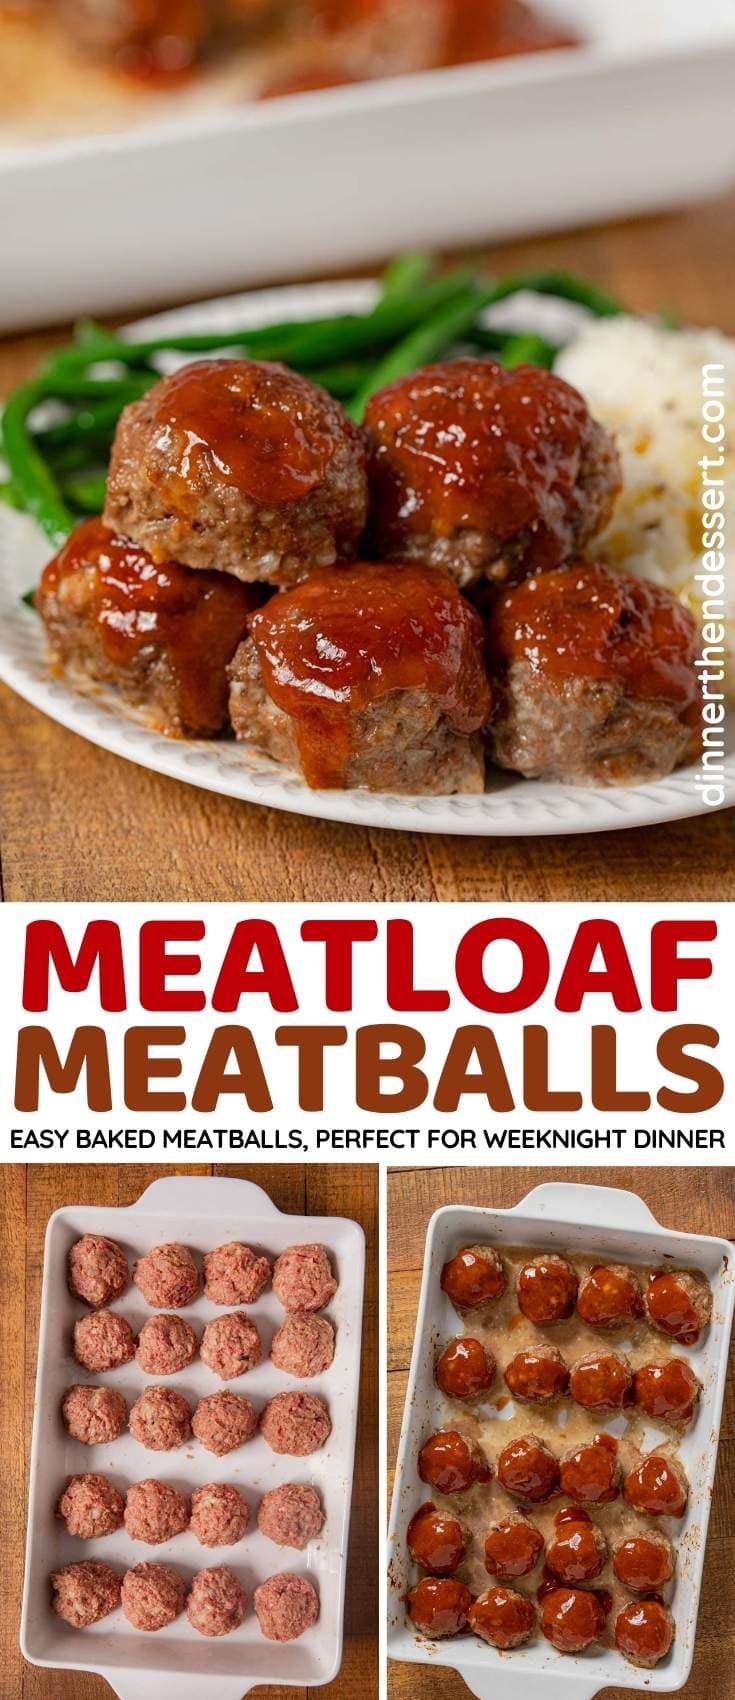 Meatloaf Meatballs collage